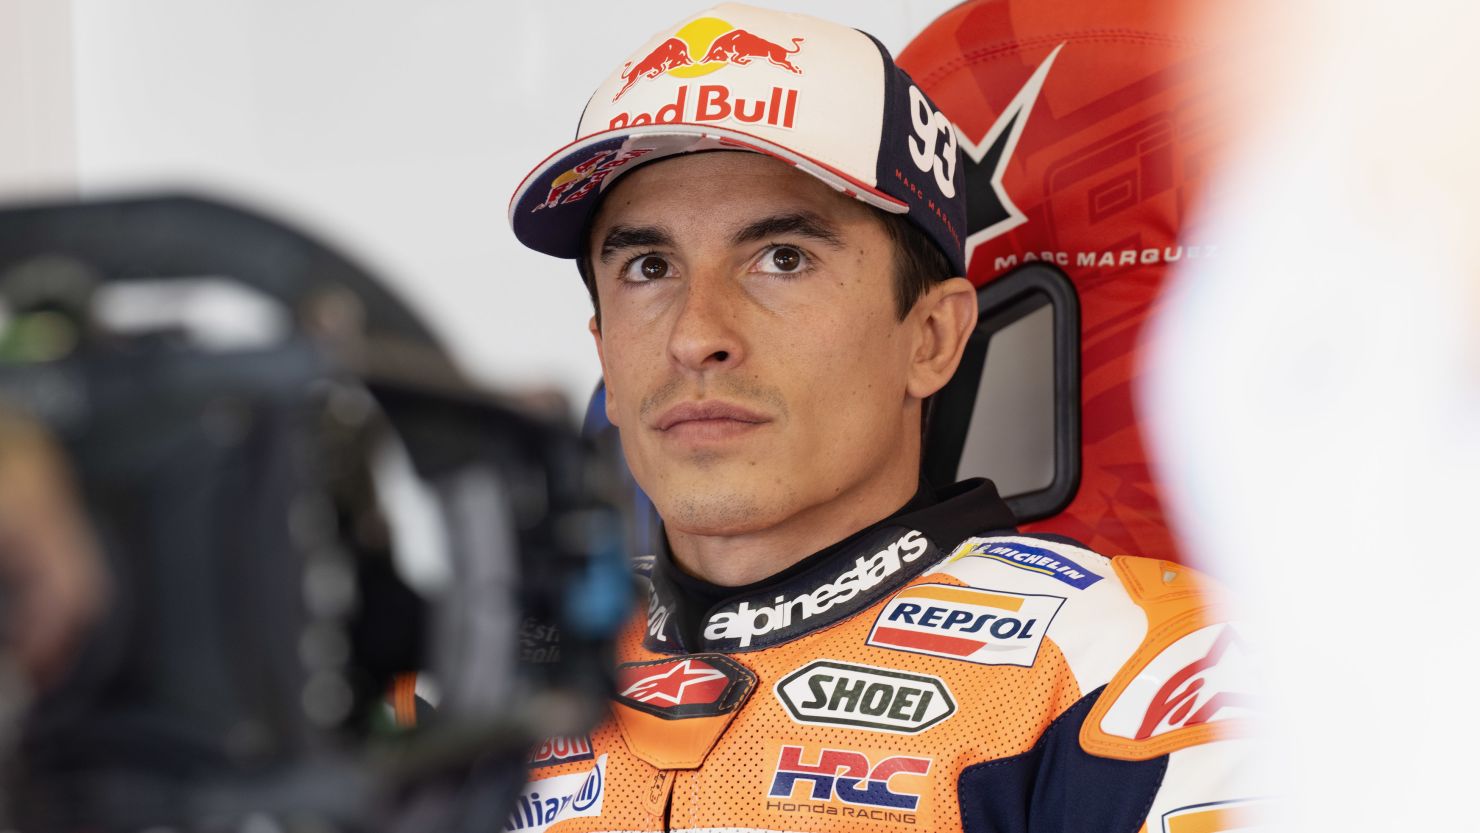 Barcelona MotoGP Q1 Poses Tough Test for Marquez